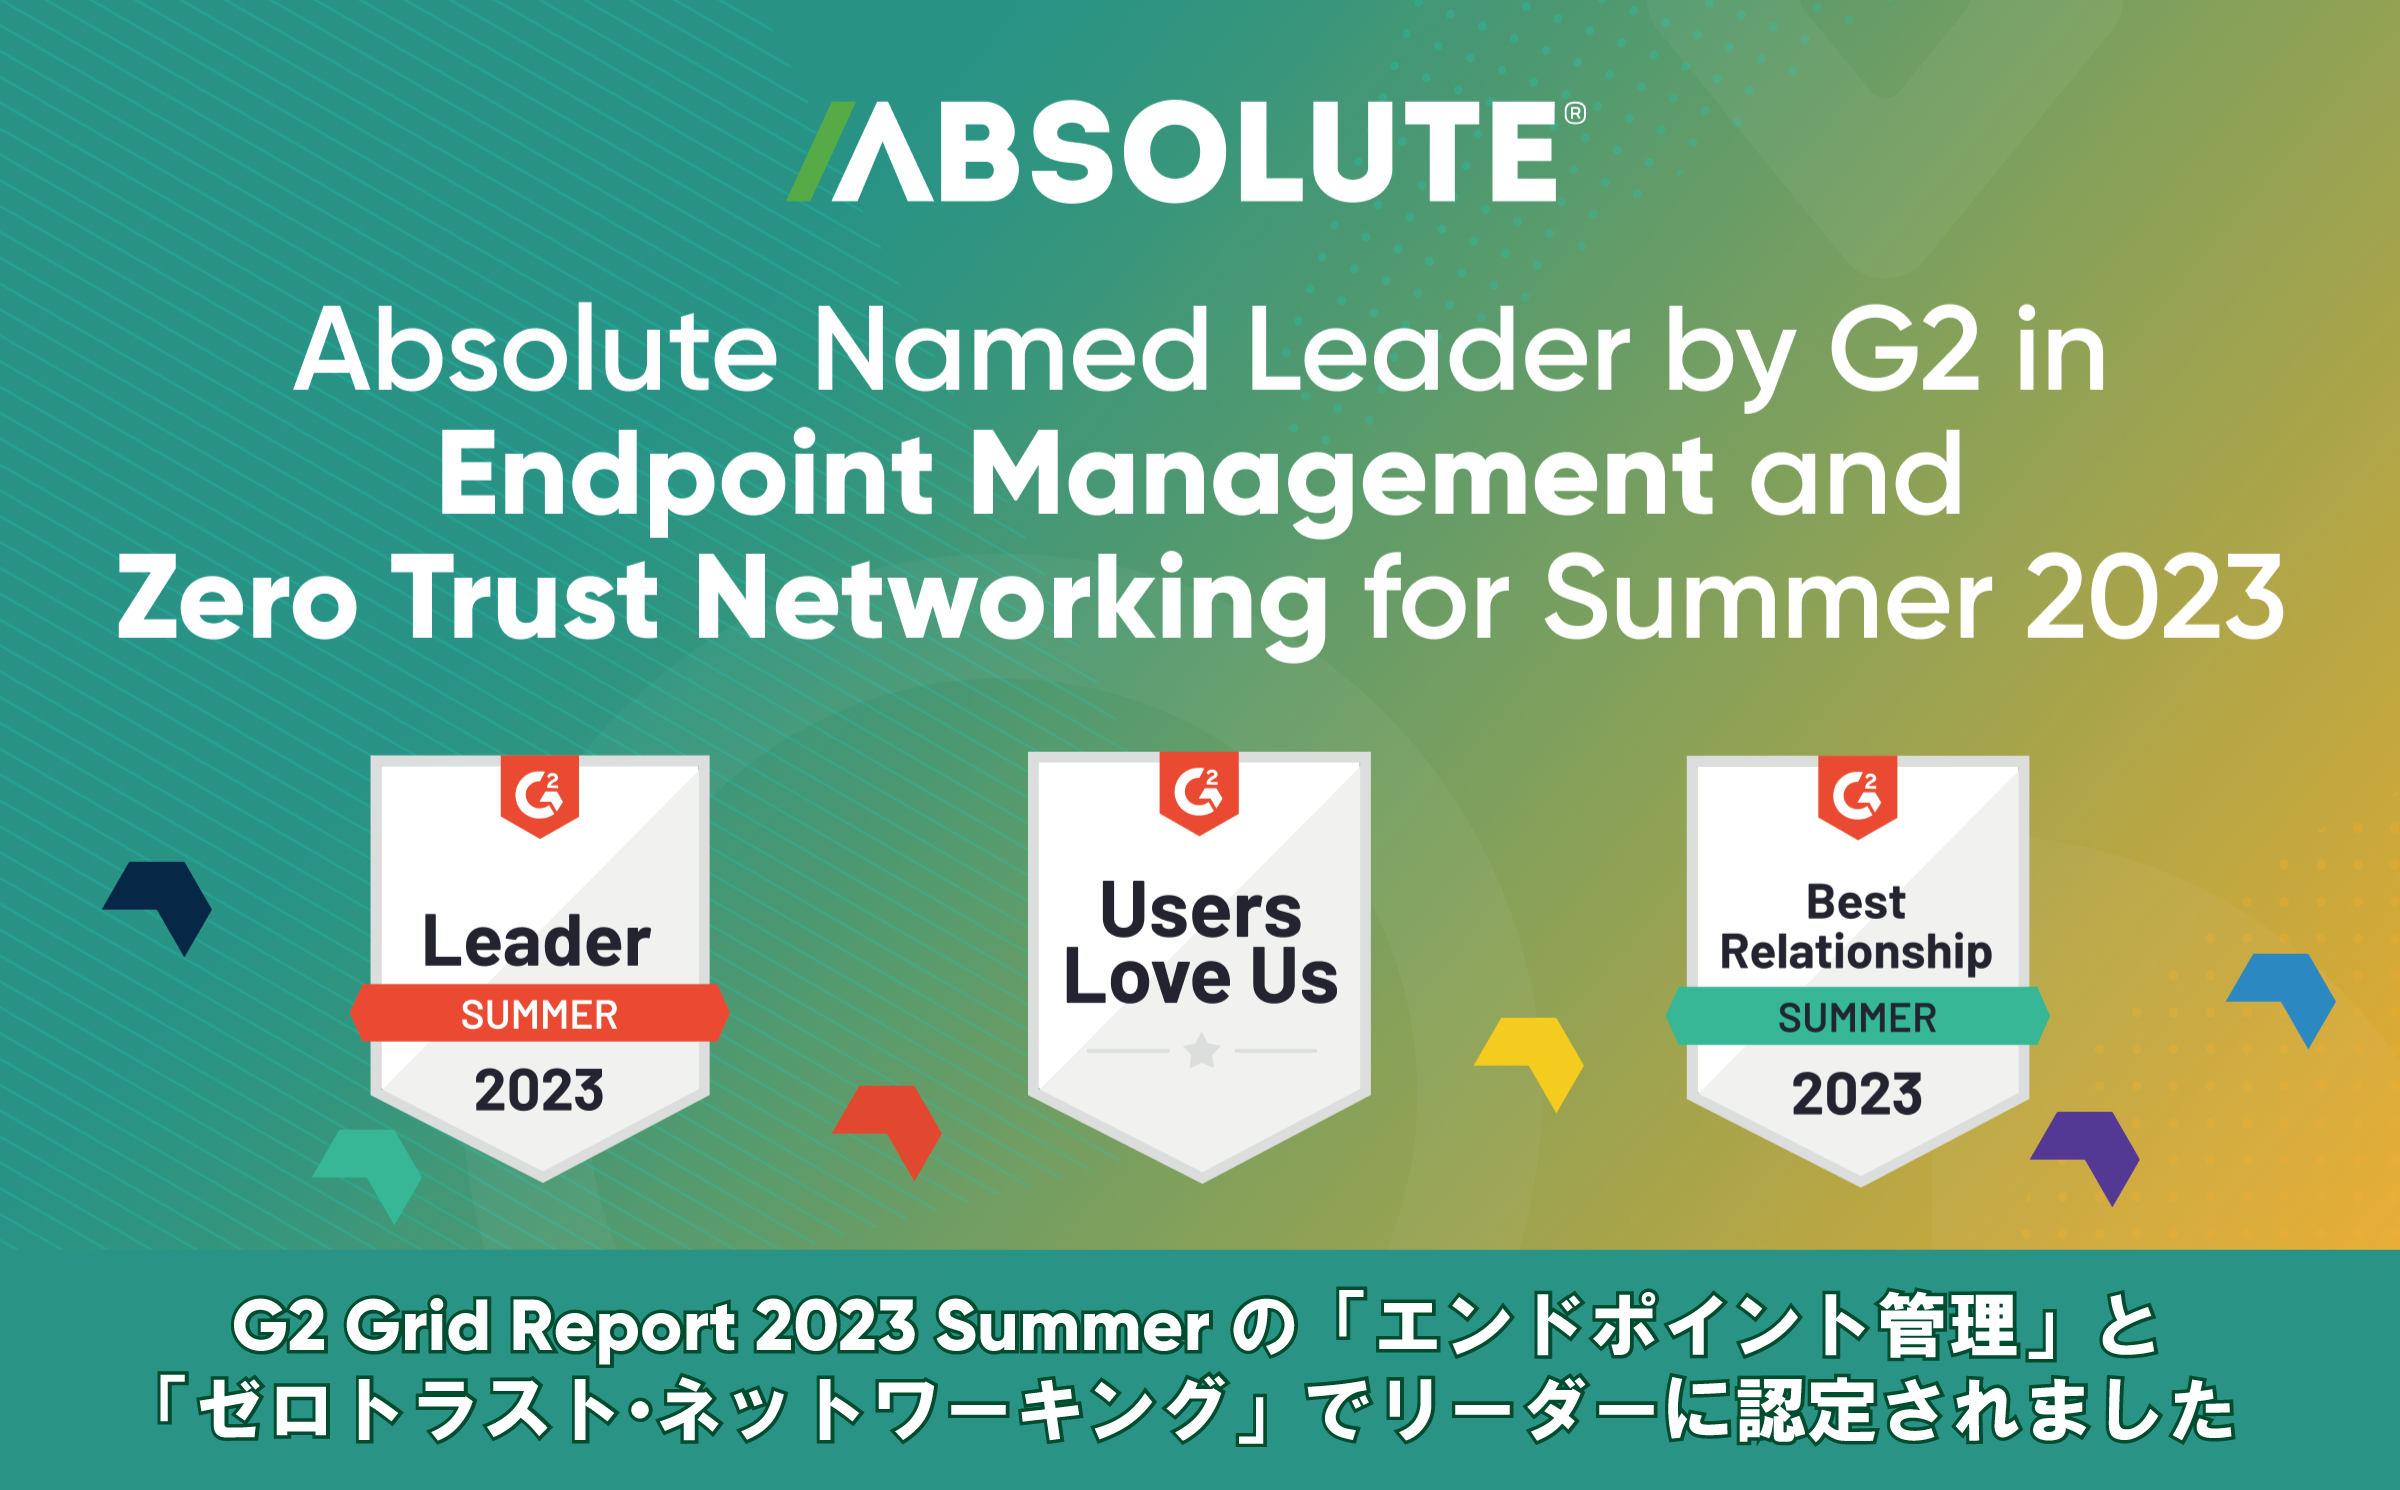 Absolute Software、G2 Grid(R) Report 2023年夏の
エンドポイント管理およびゼロトラスト・ネットワーキングの
ふたつの分野においてリーダーに選出 – Net24